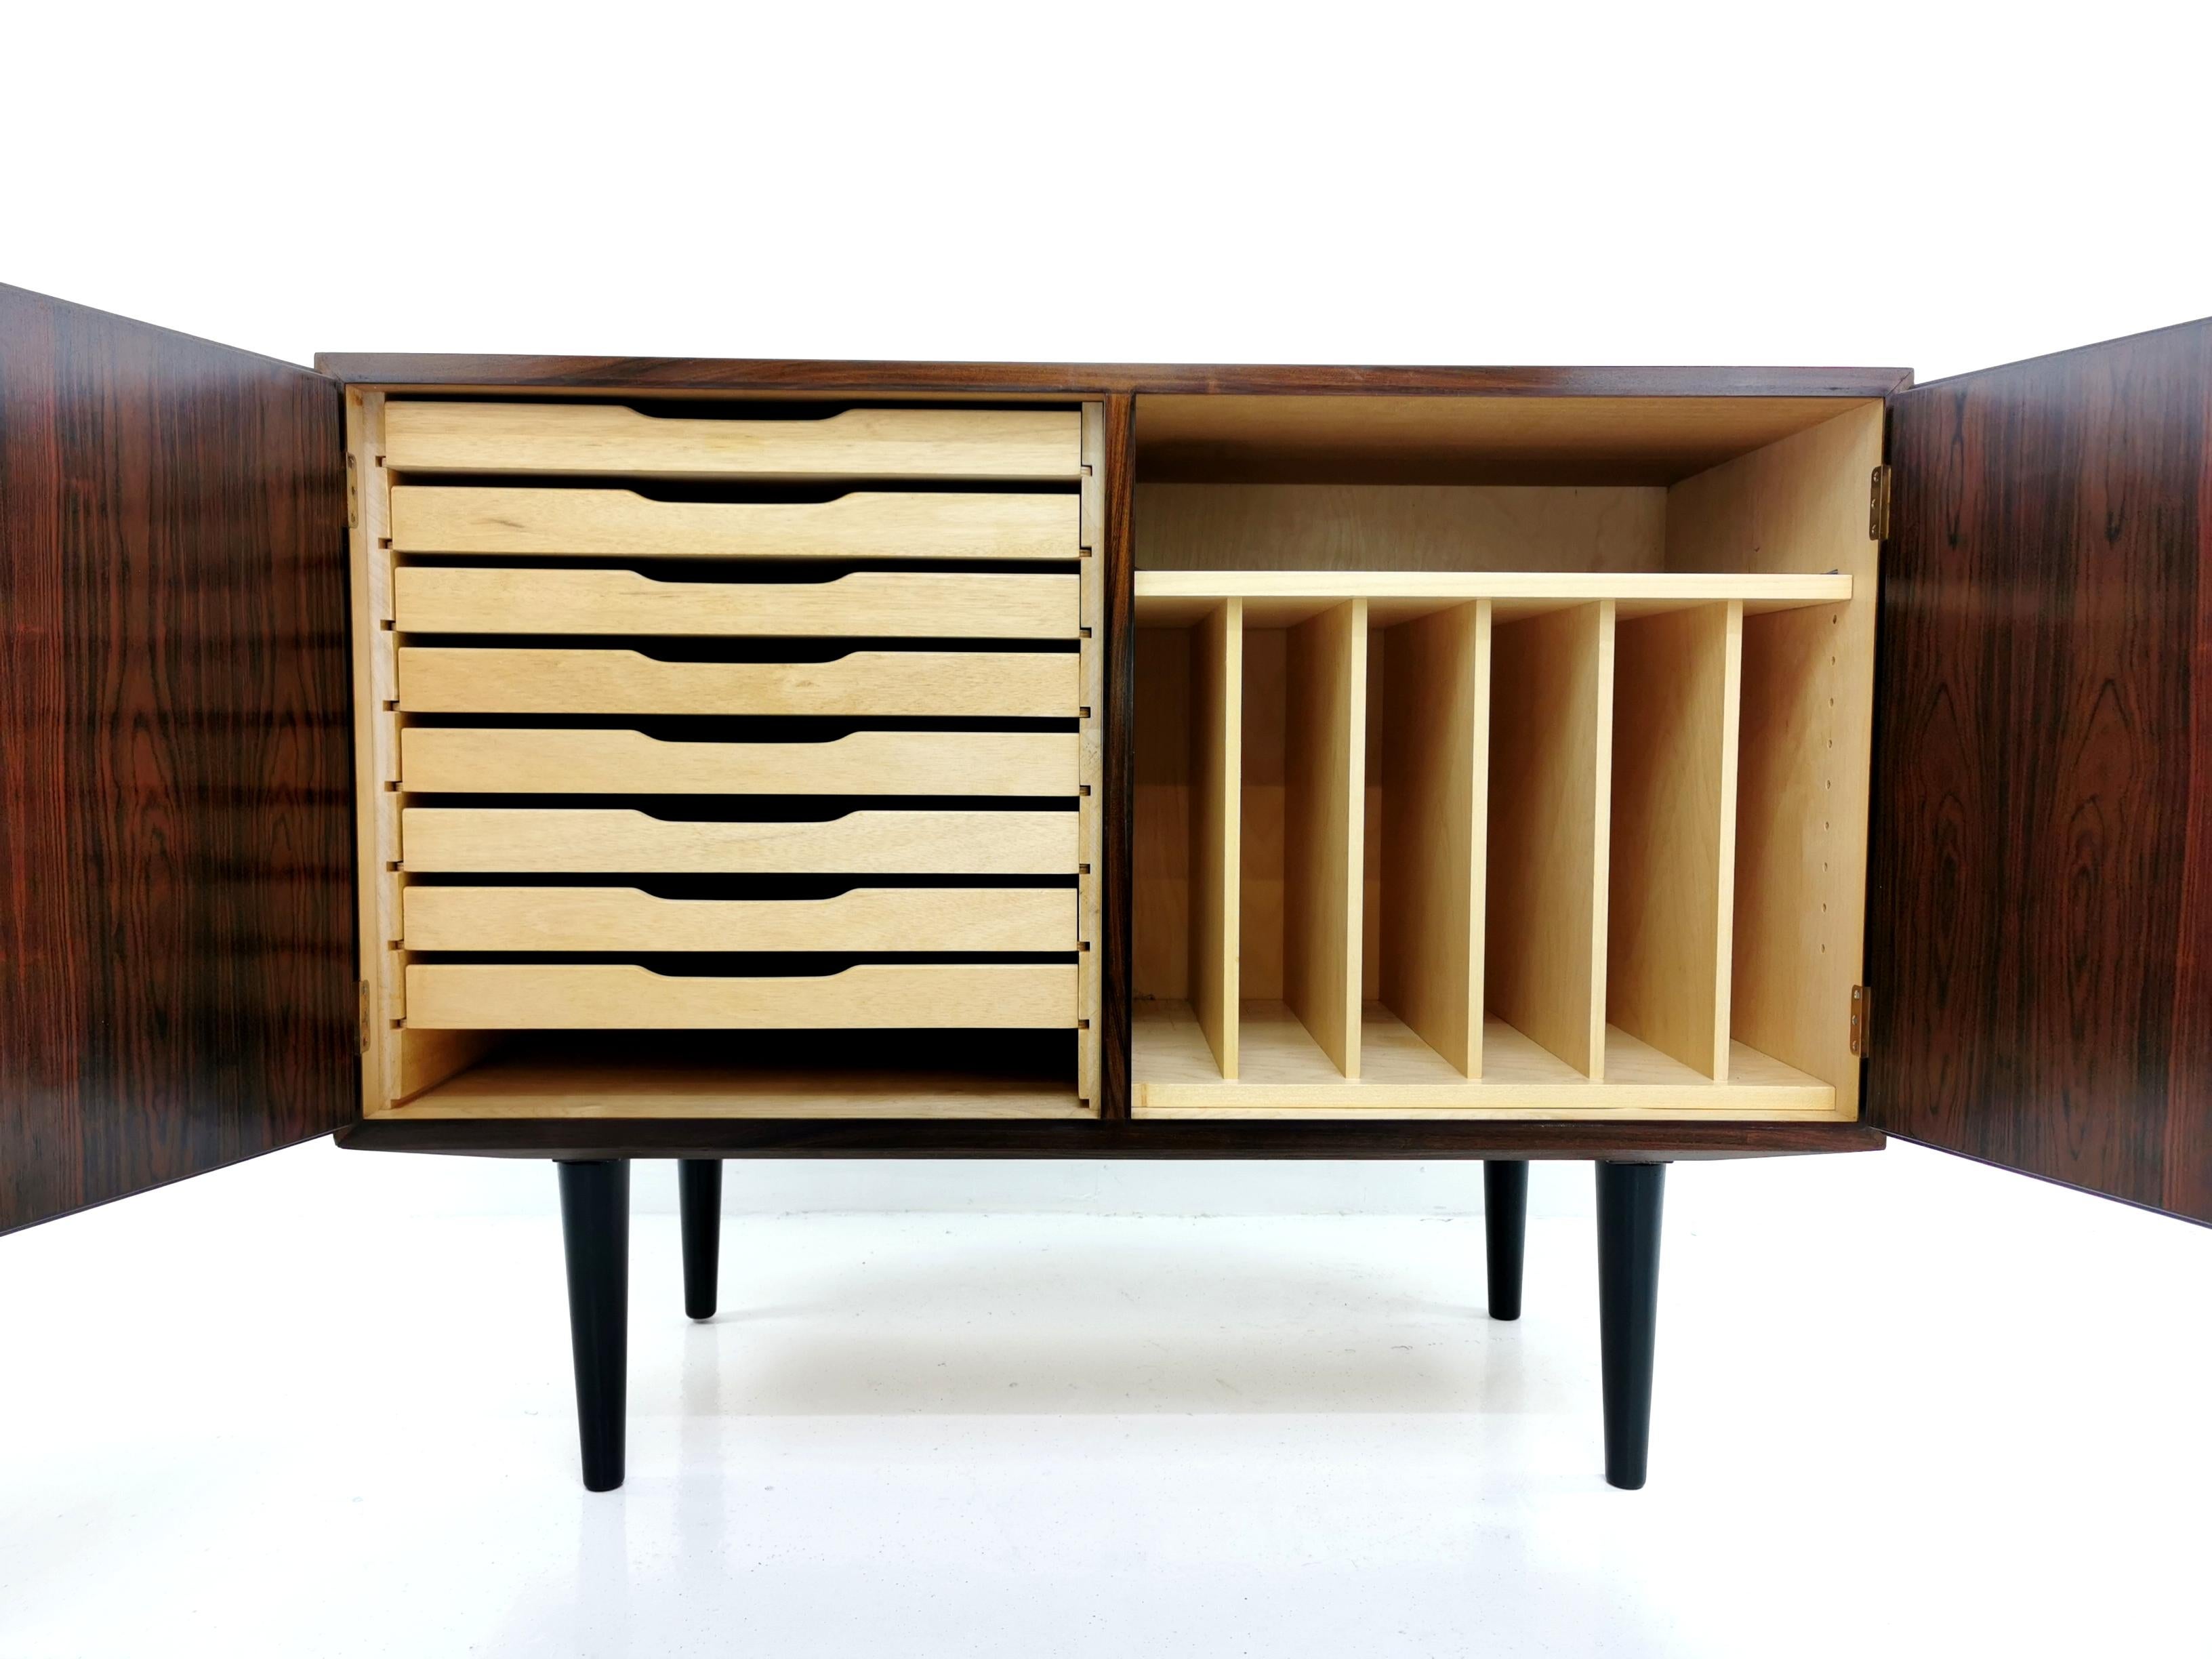 Mid-Century Modern Danish Hundevad Rosewood Media Unit Sideboard 1970s Midcentury Vintage Cabinet